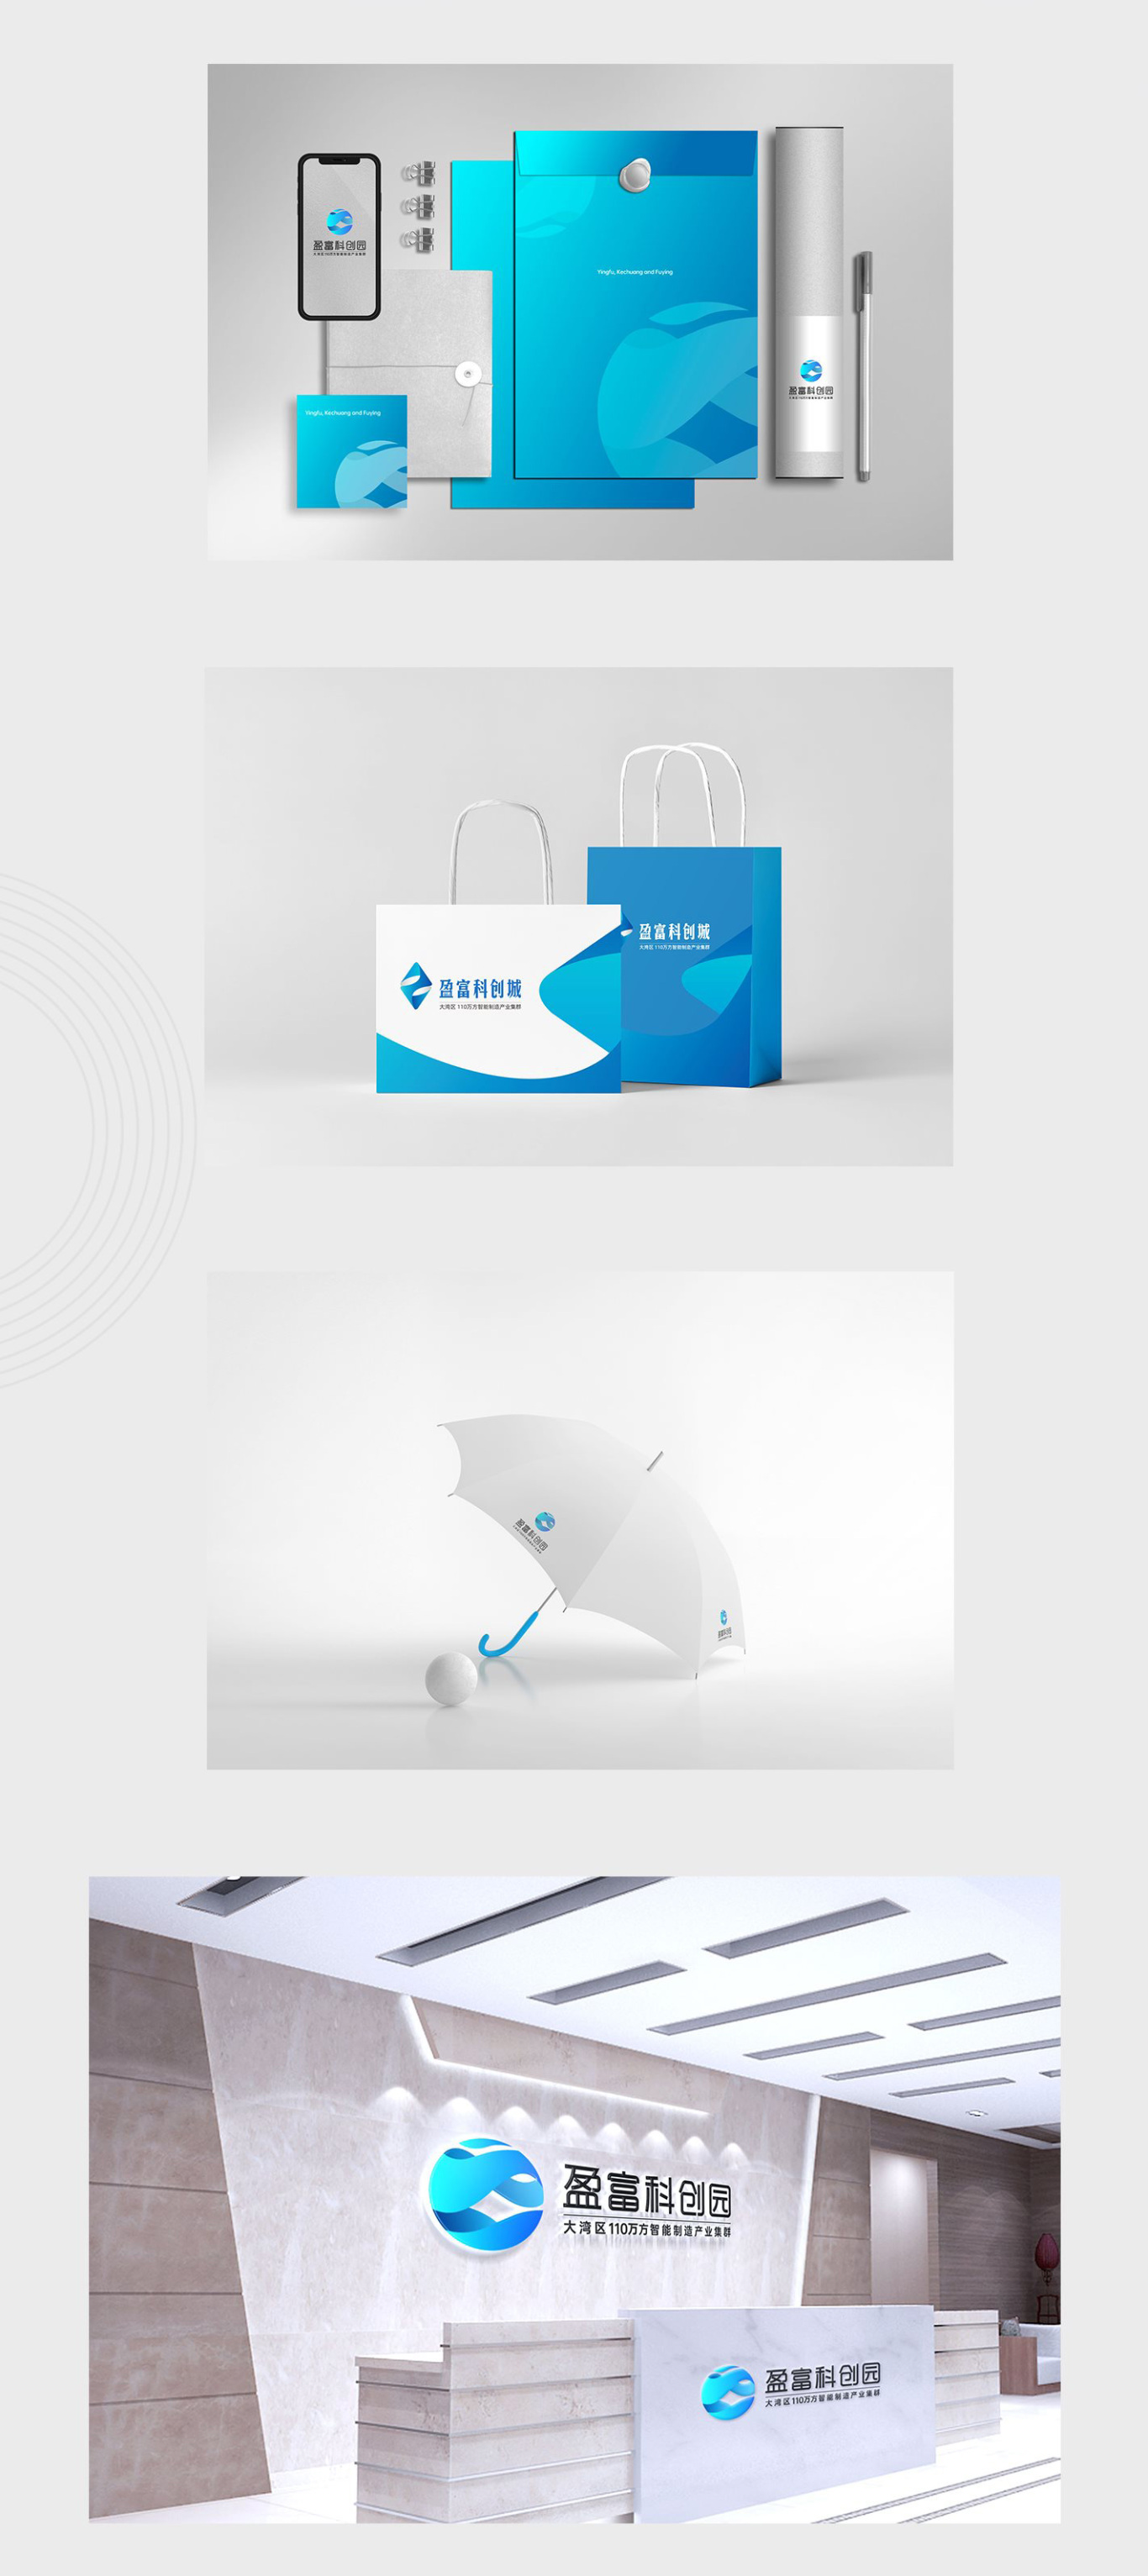 『盈富产业园』地产品牌包装企业VI设计  LOGO设计(方案三)图2